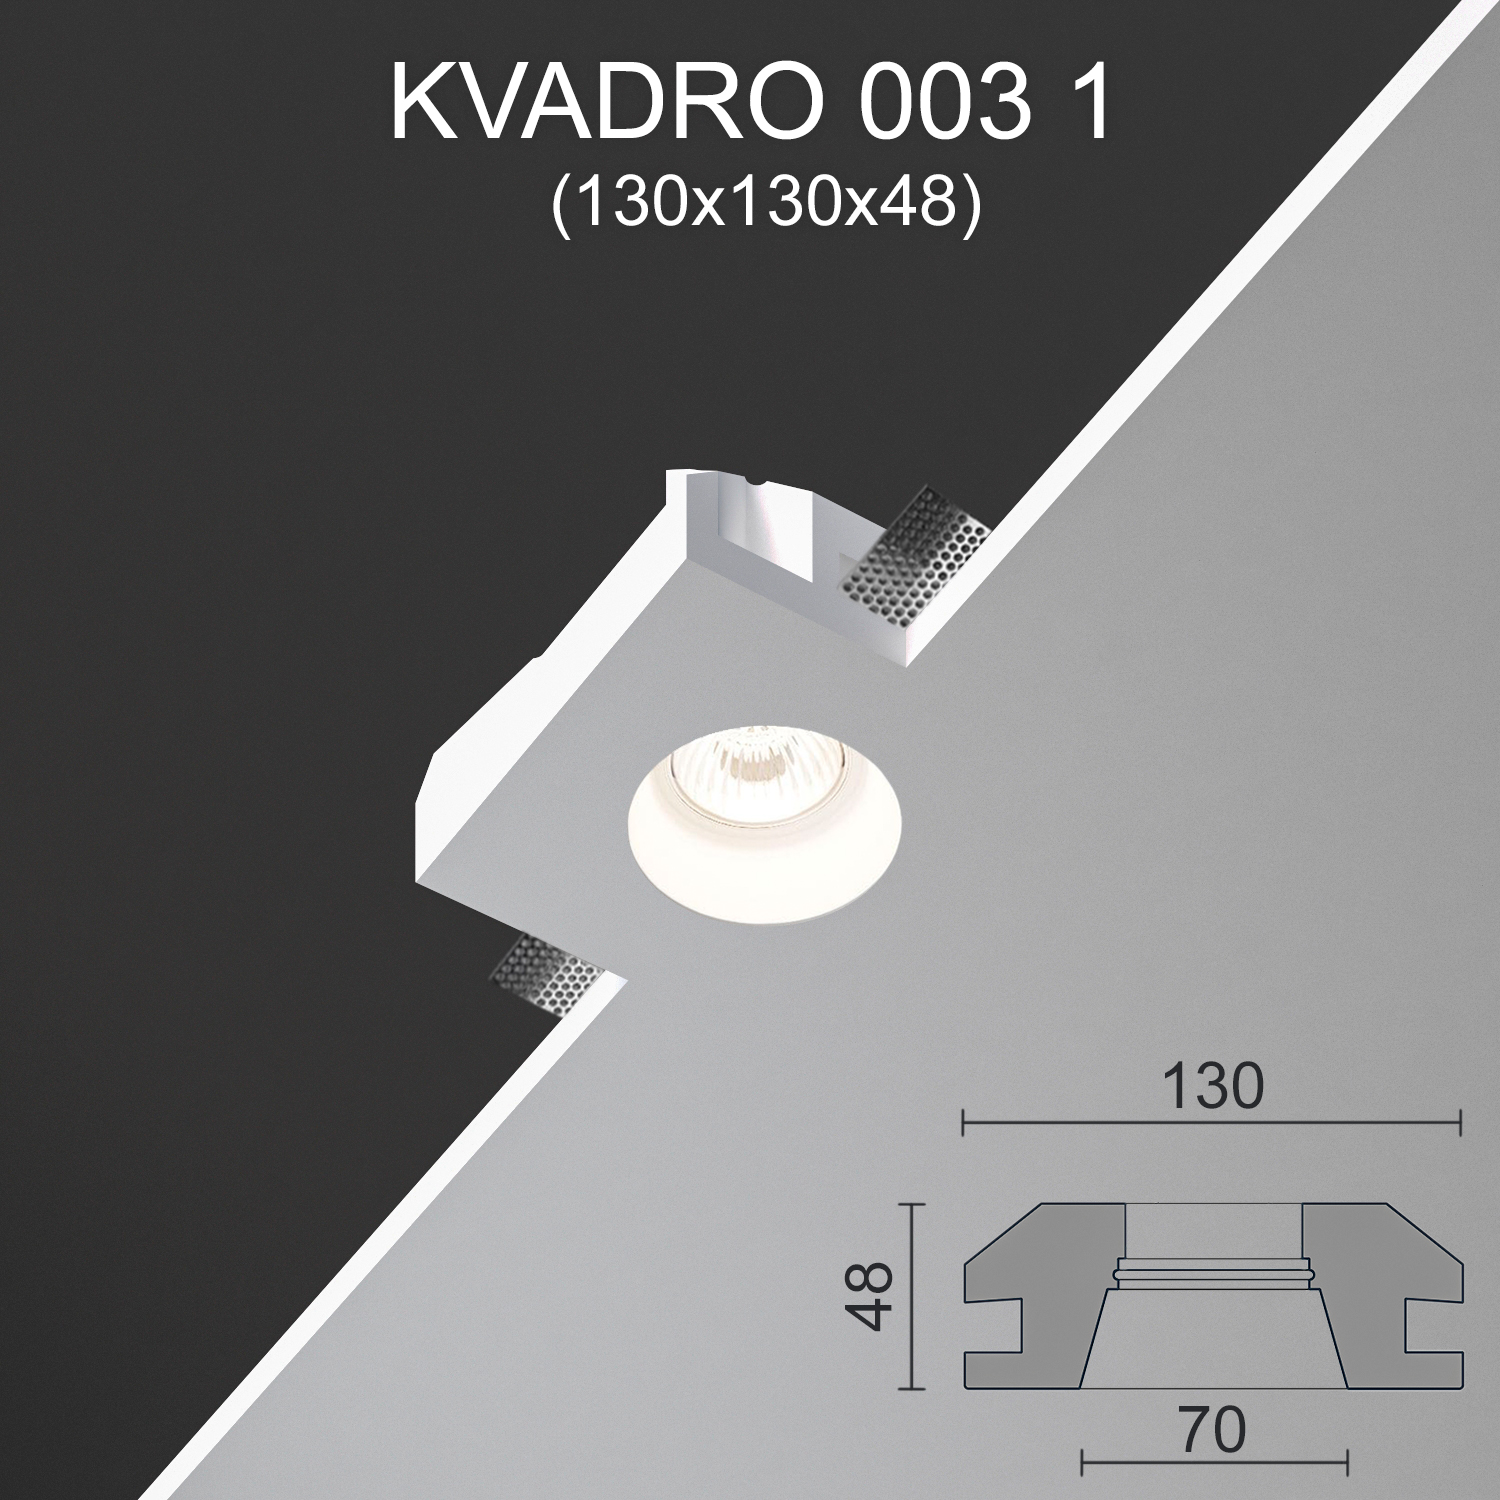 Светильник встраиваемый точечный гипсовый KVADRO 003 1